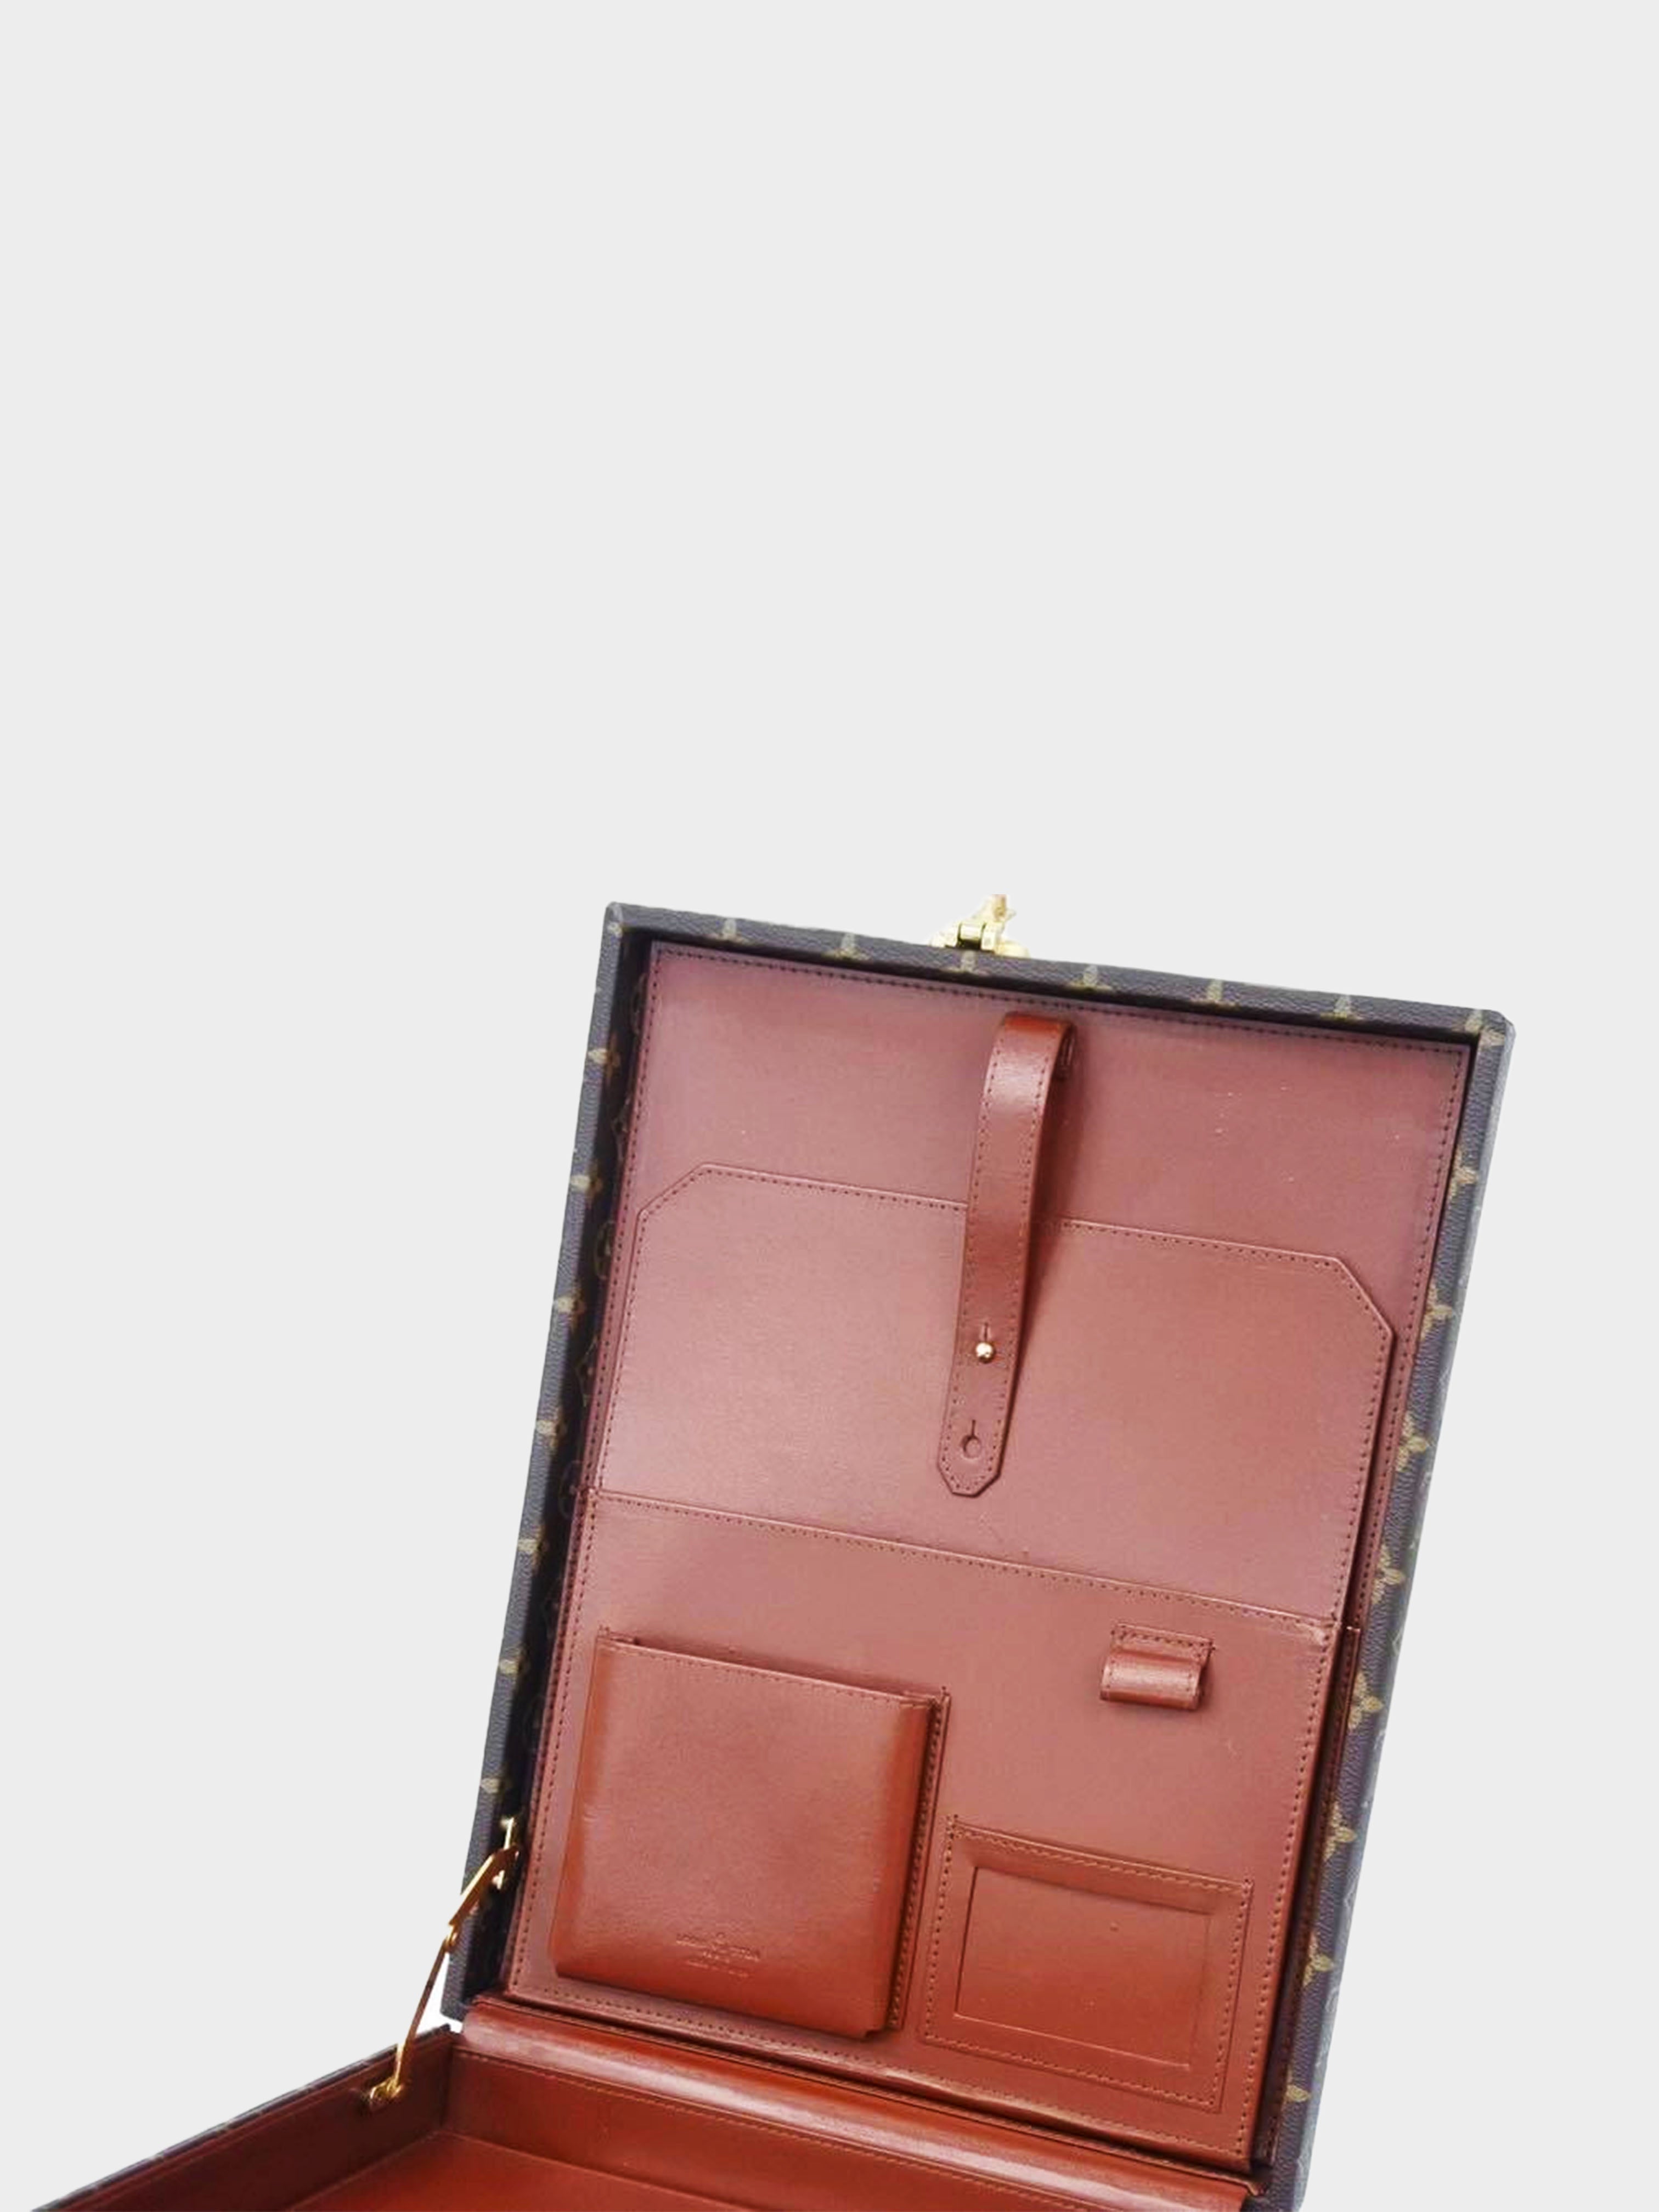 LV S Lock Briefcase